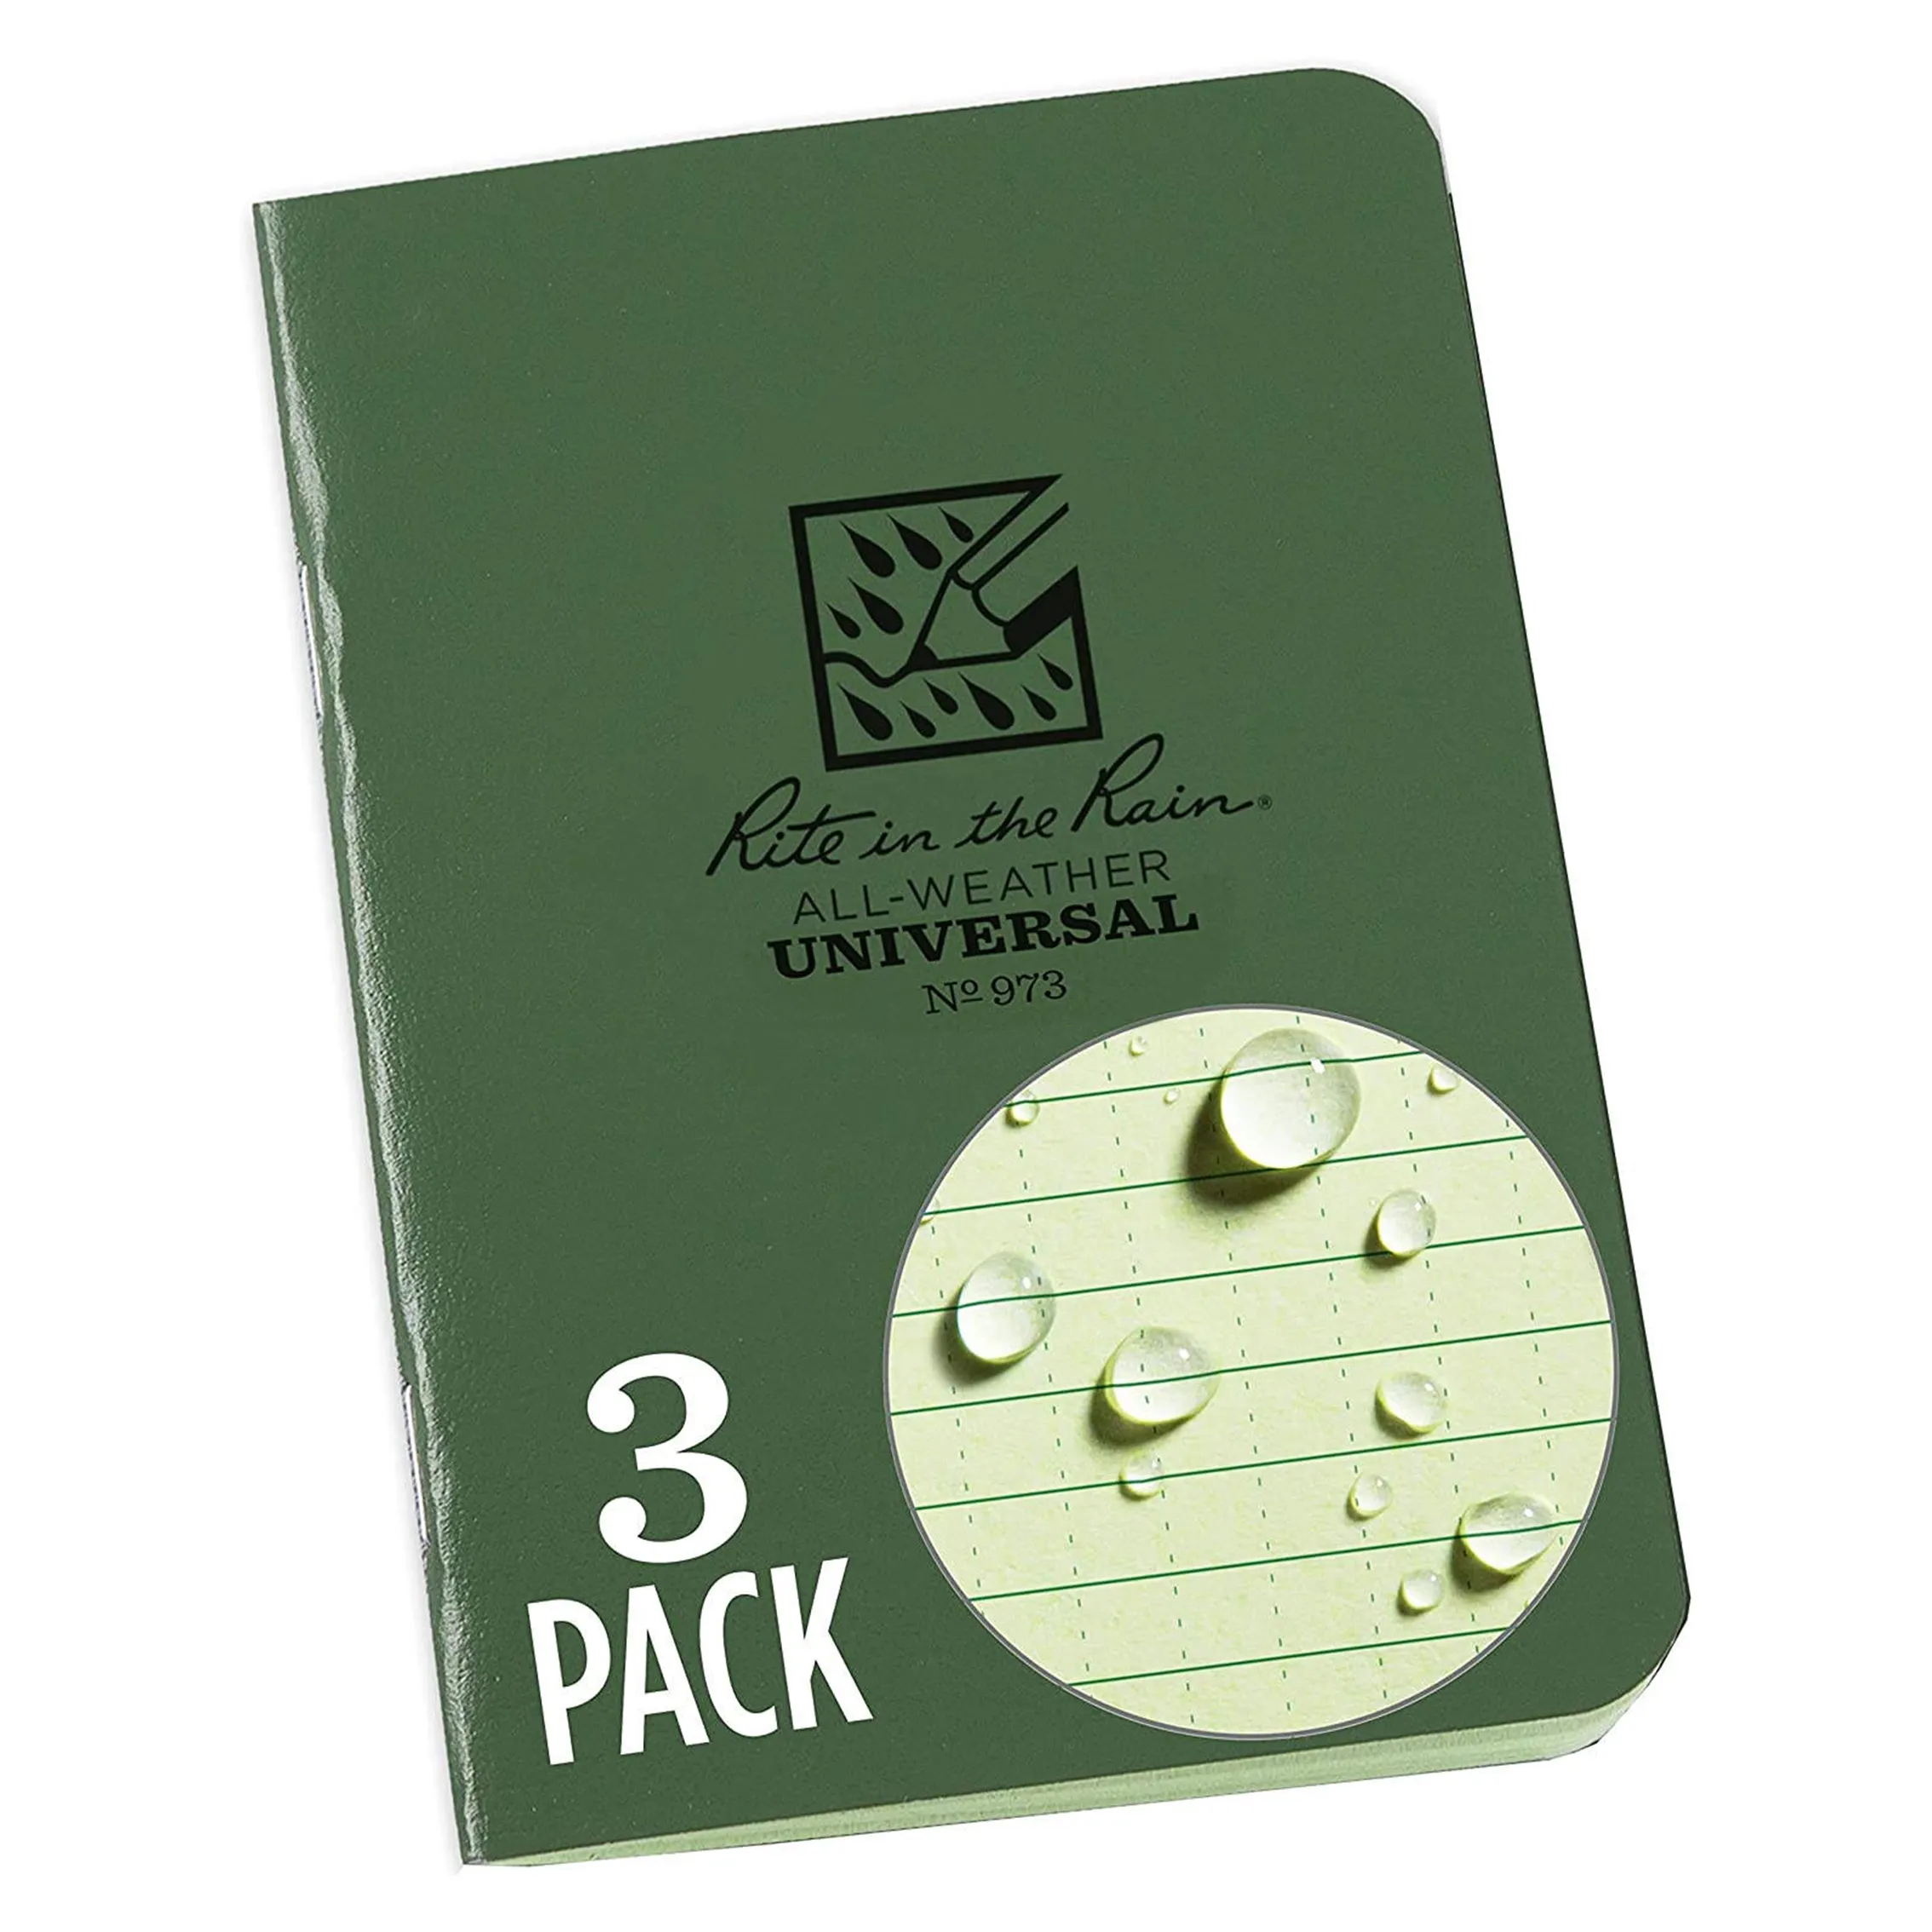 Cover hijau notebook jahit ikat mini tahan hujan ukuran dapat disesuaikan A4 A5 A3.